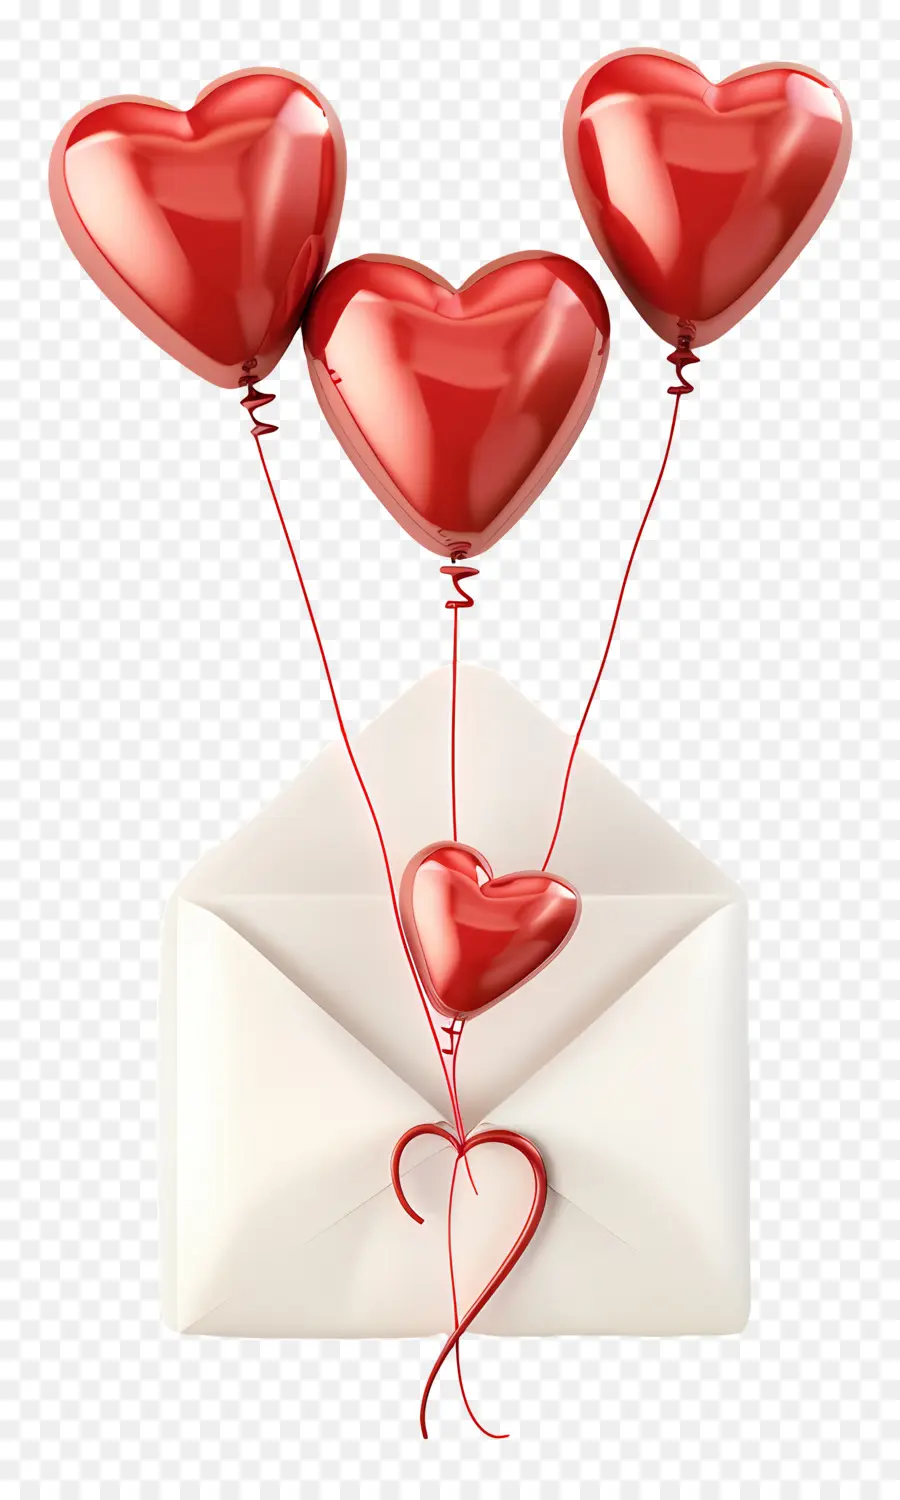 Quả Bóng Màu Đỏ - Bóng trái tim với thư tình trong phong bì